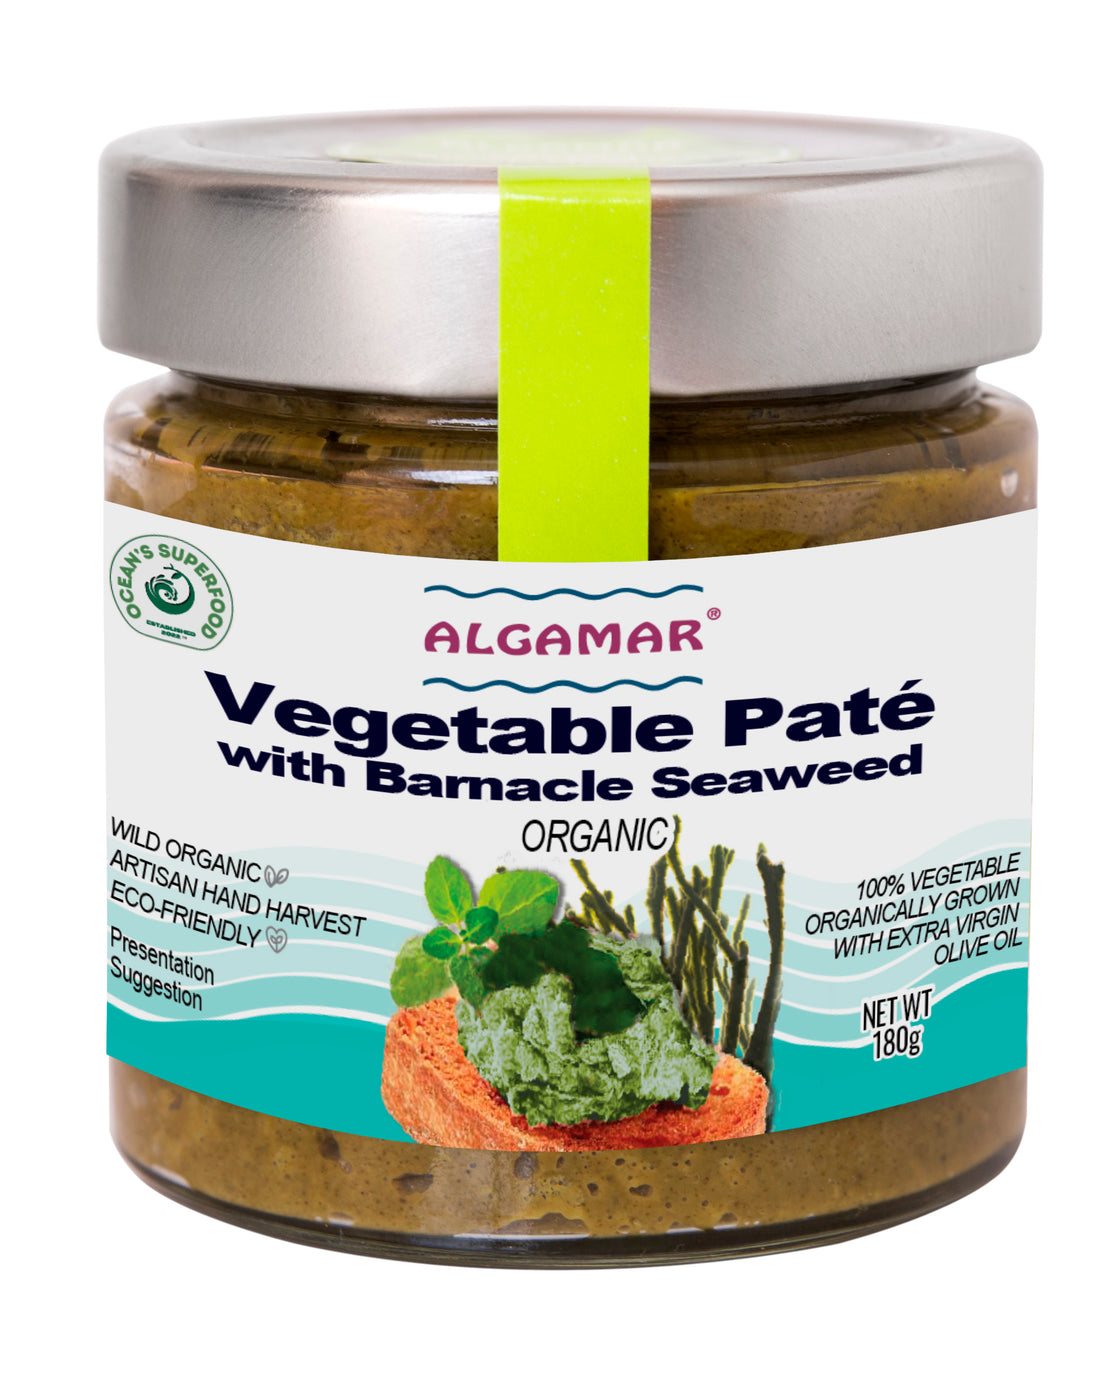 Vegetable Pate with Barnacle Seaweed, Organic